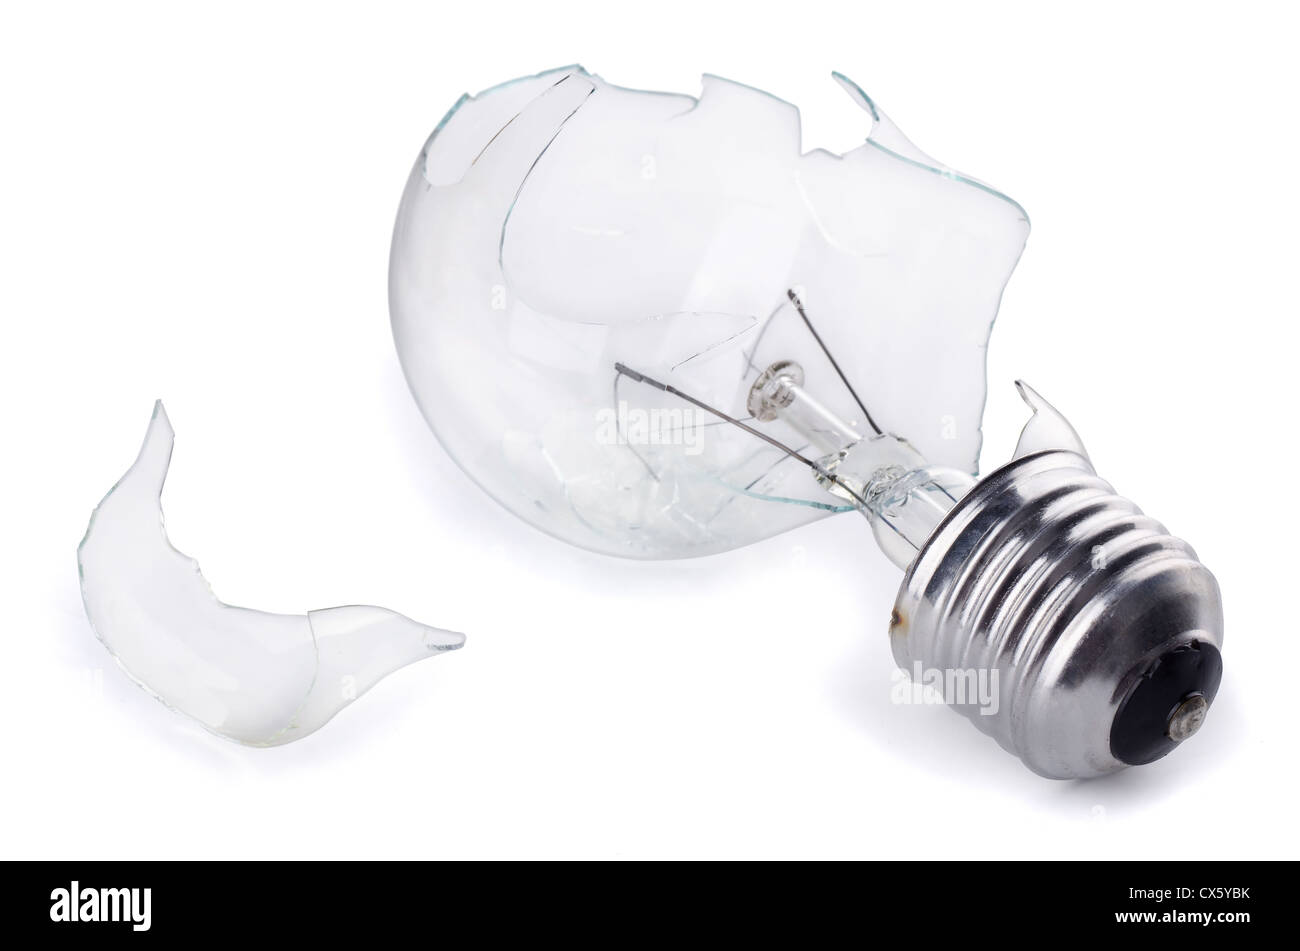 Broken light bulb isolated on white Stock Photo